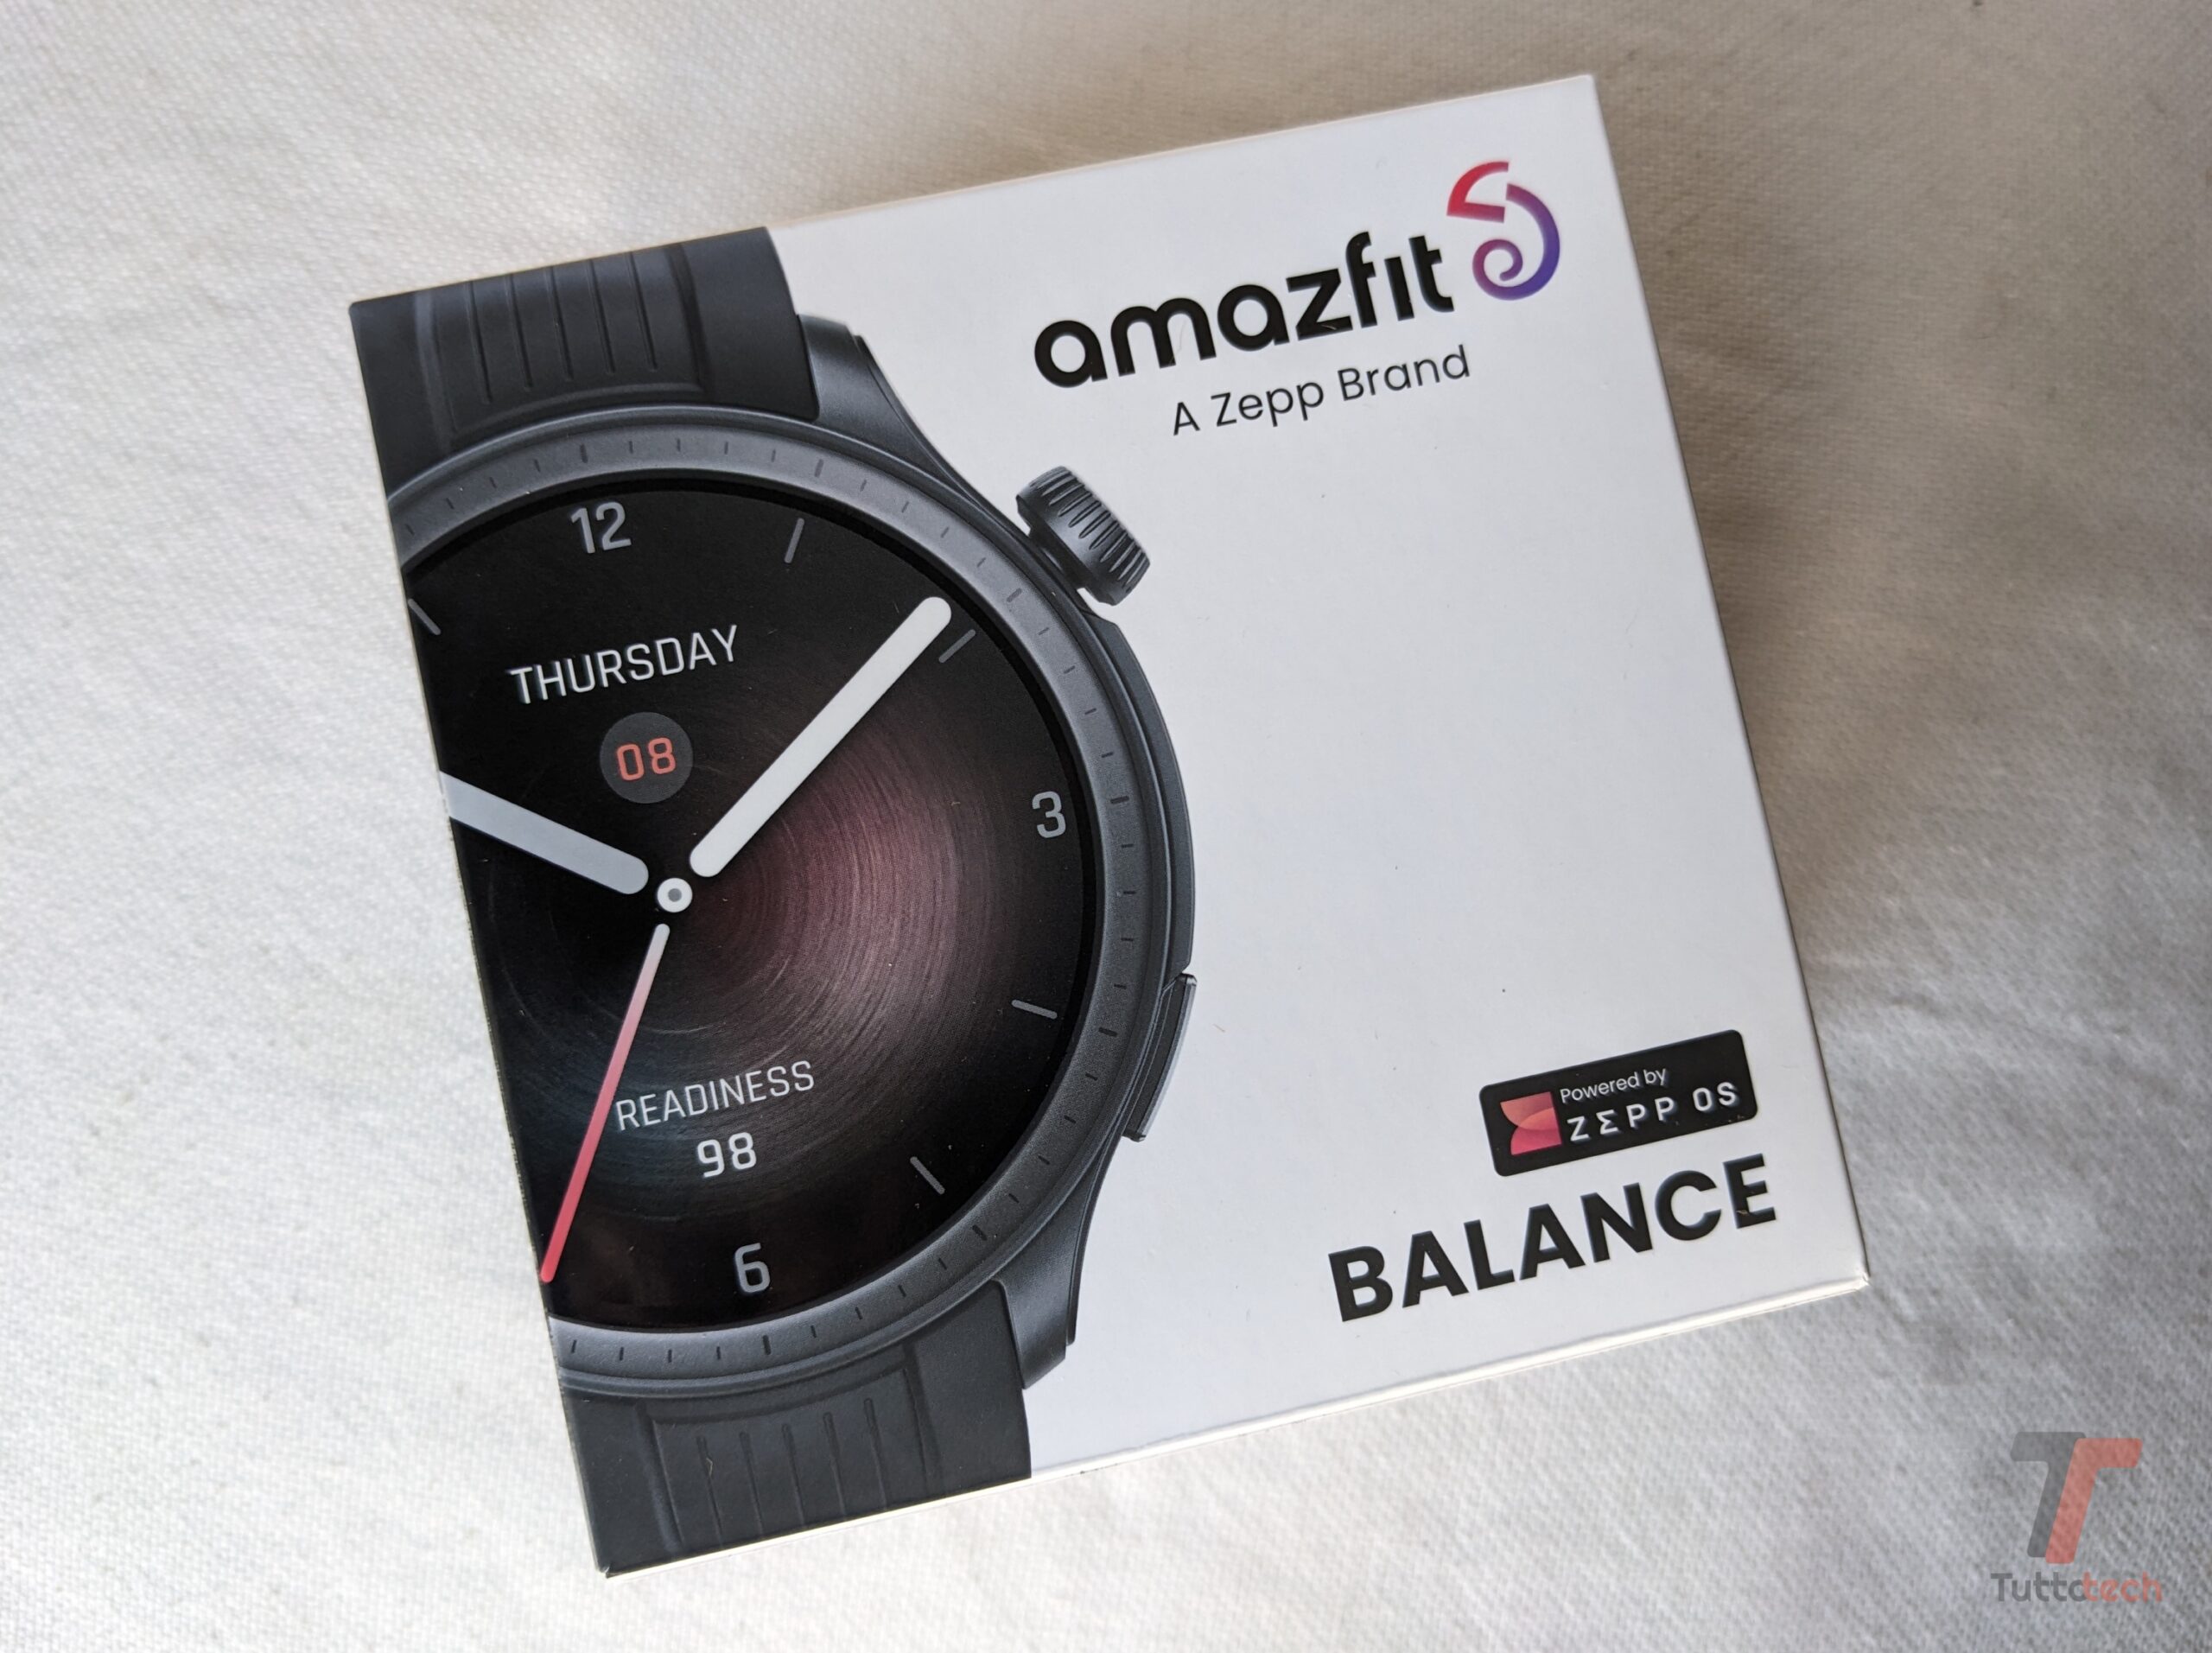 Recensione Amazfit Balance: è lo smartwatch per il benessere che aspettavo 2